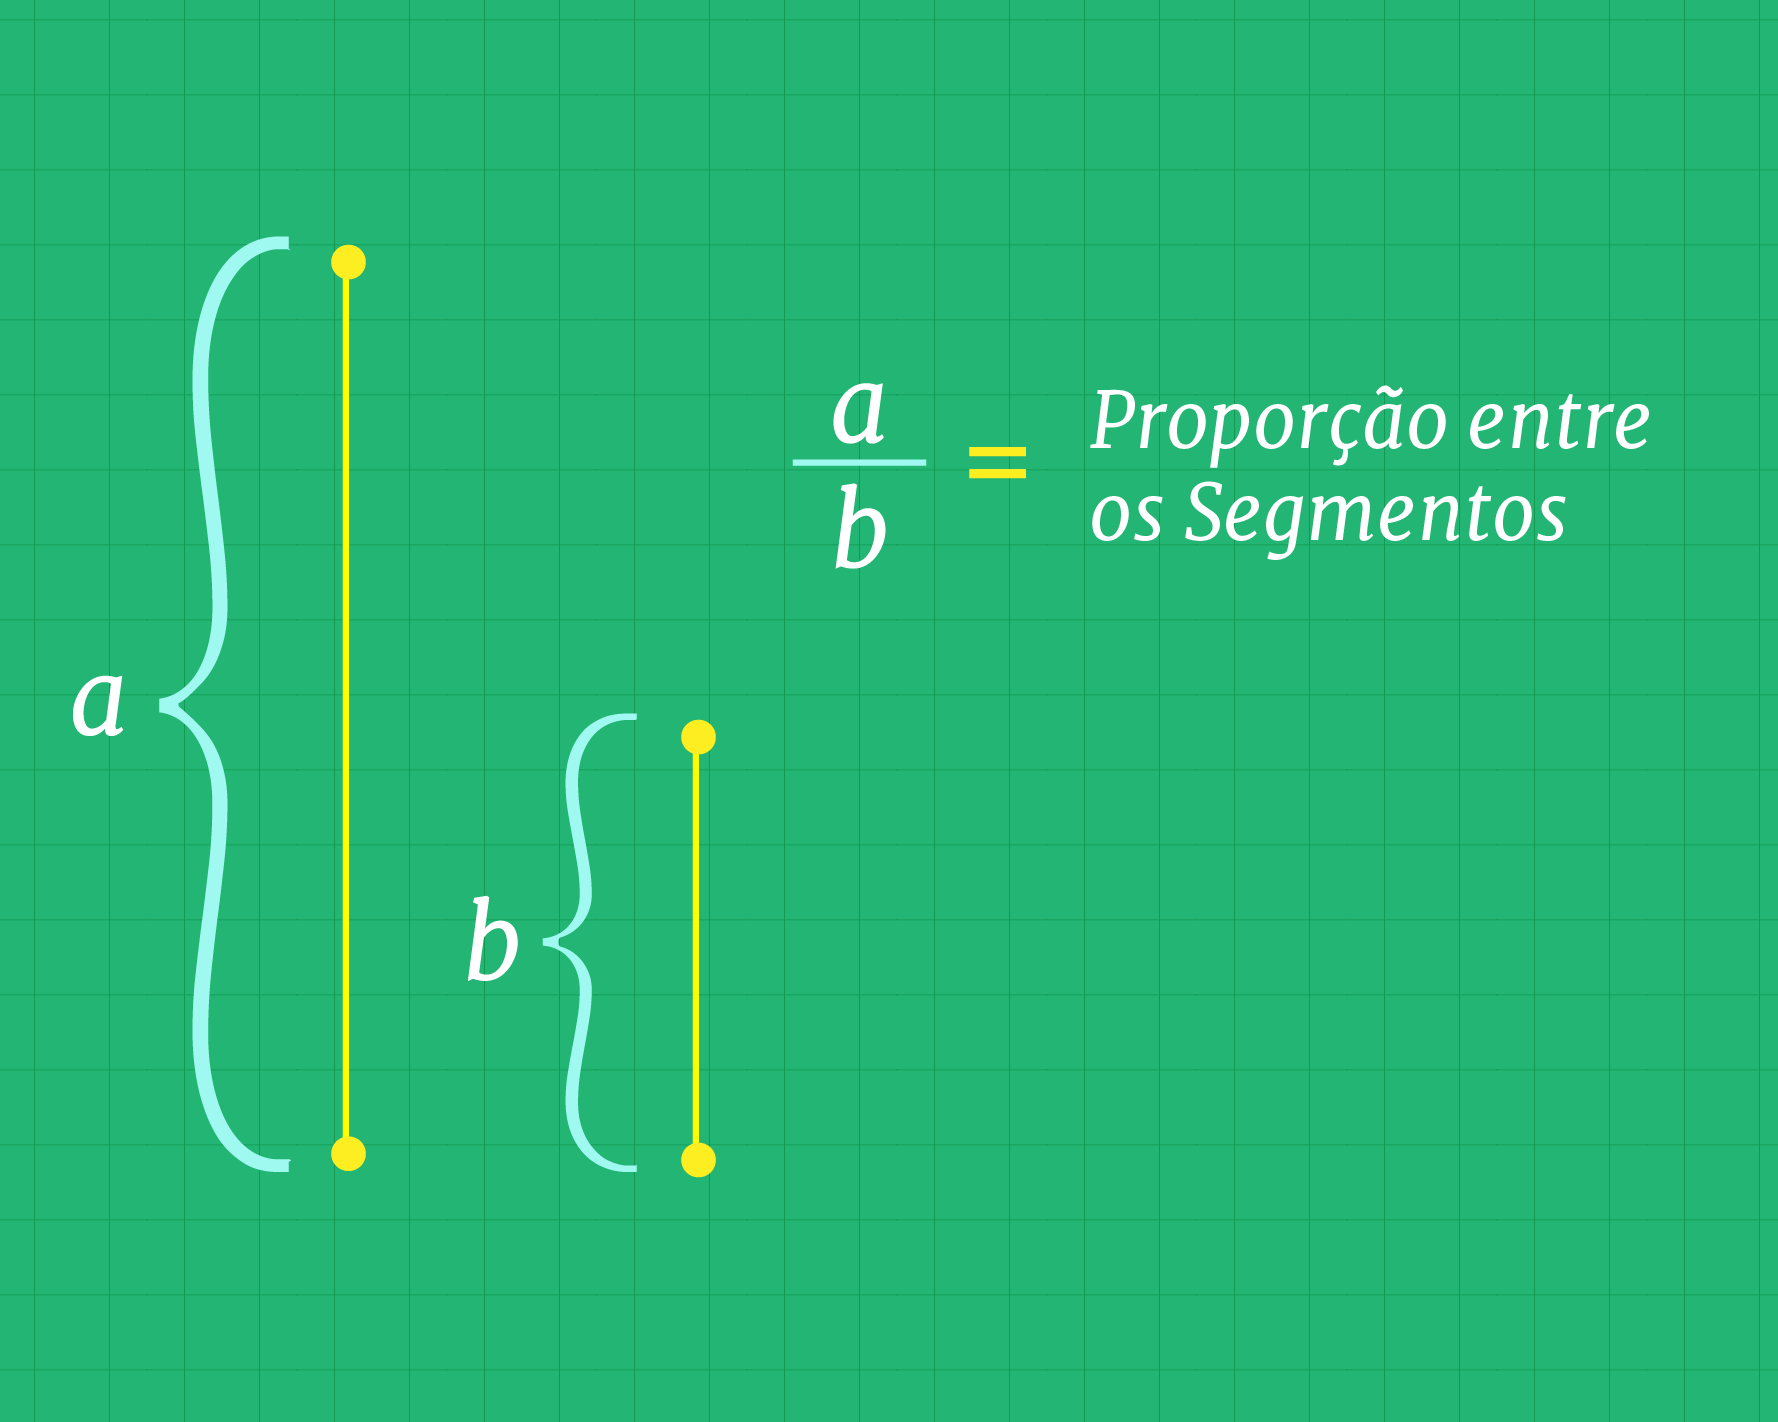 Proporção entre os segmentos a e b